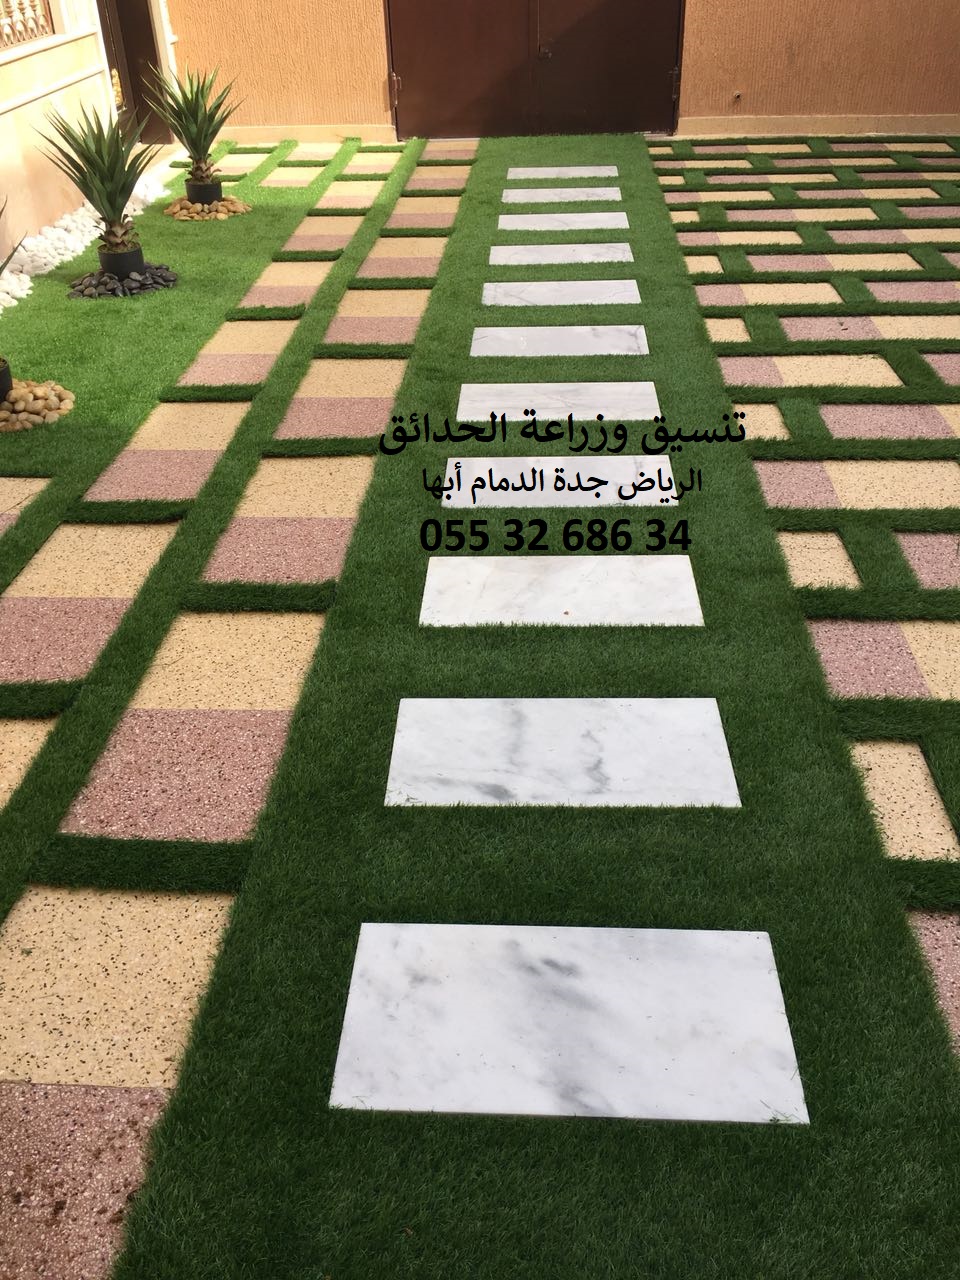 شركة تنسيق حدائق عشب صناعي عشب جداري الرياض جدة الدمام 0553268634 P_114358c9c2